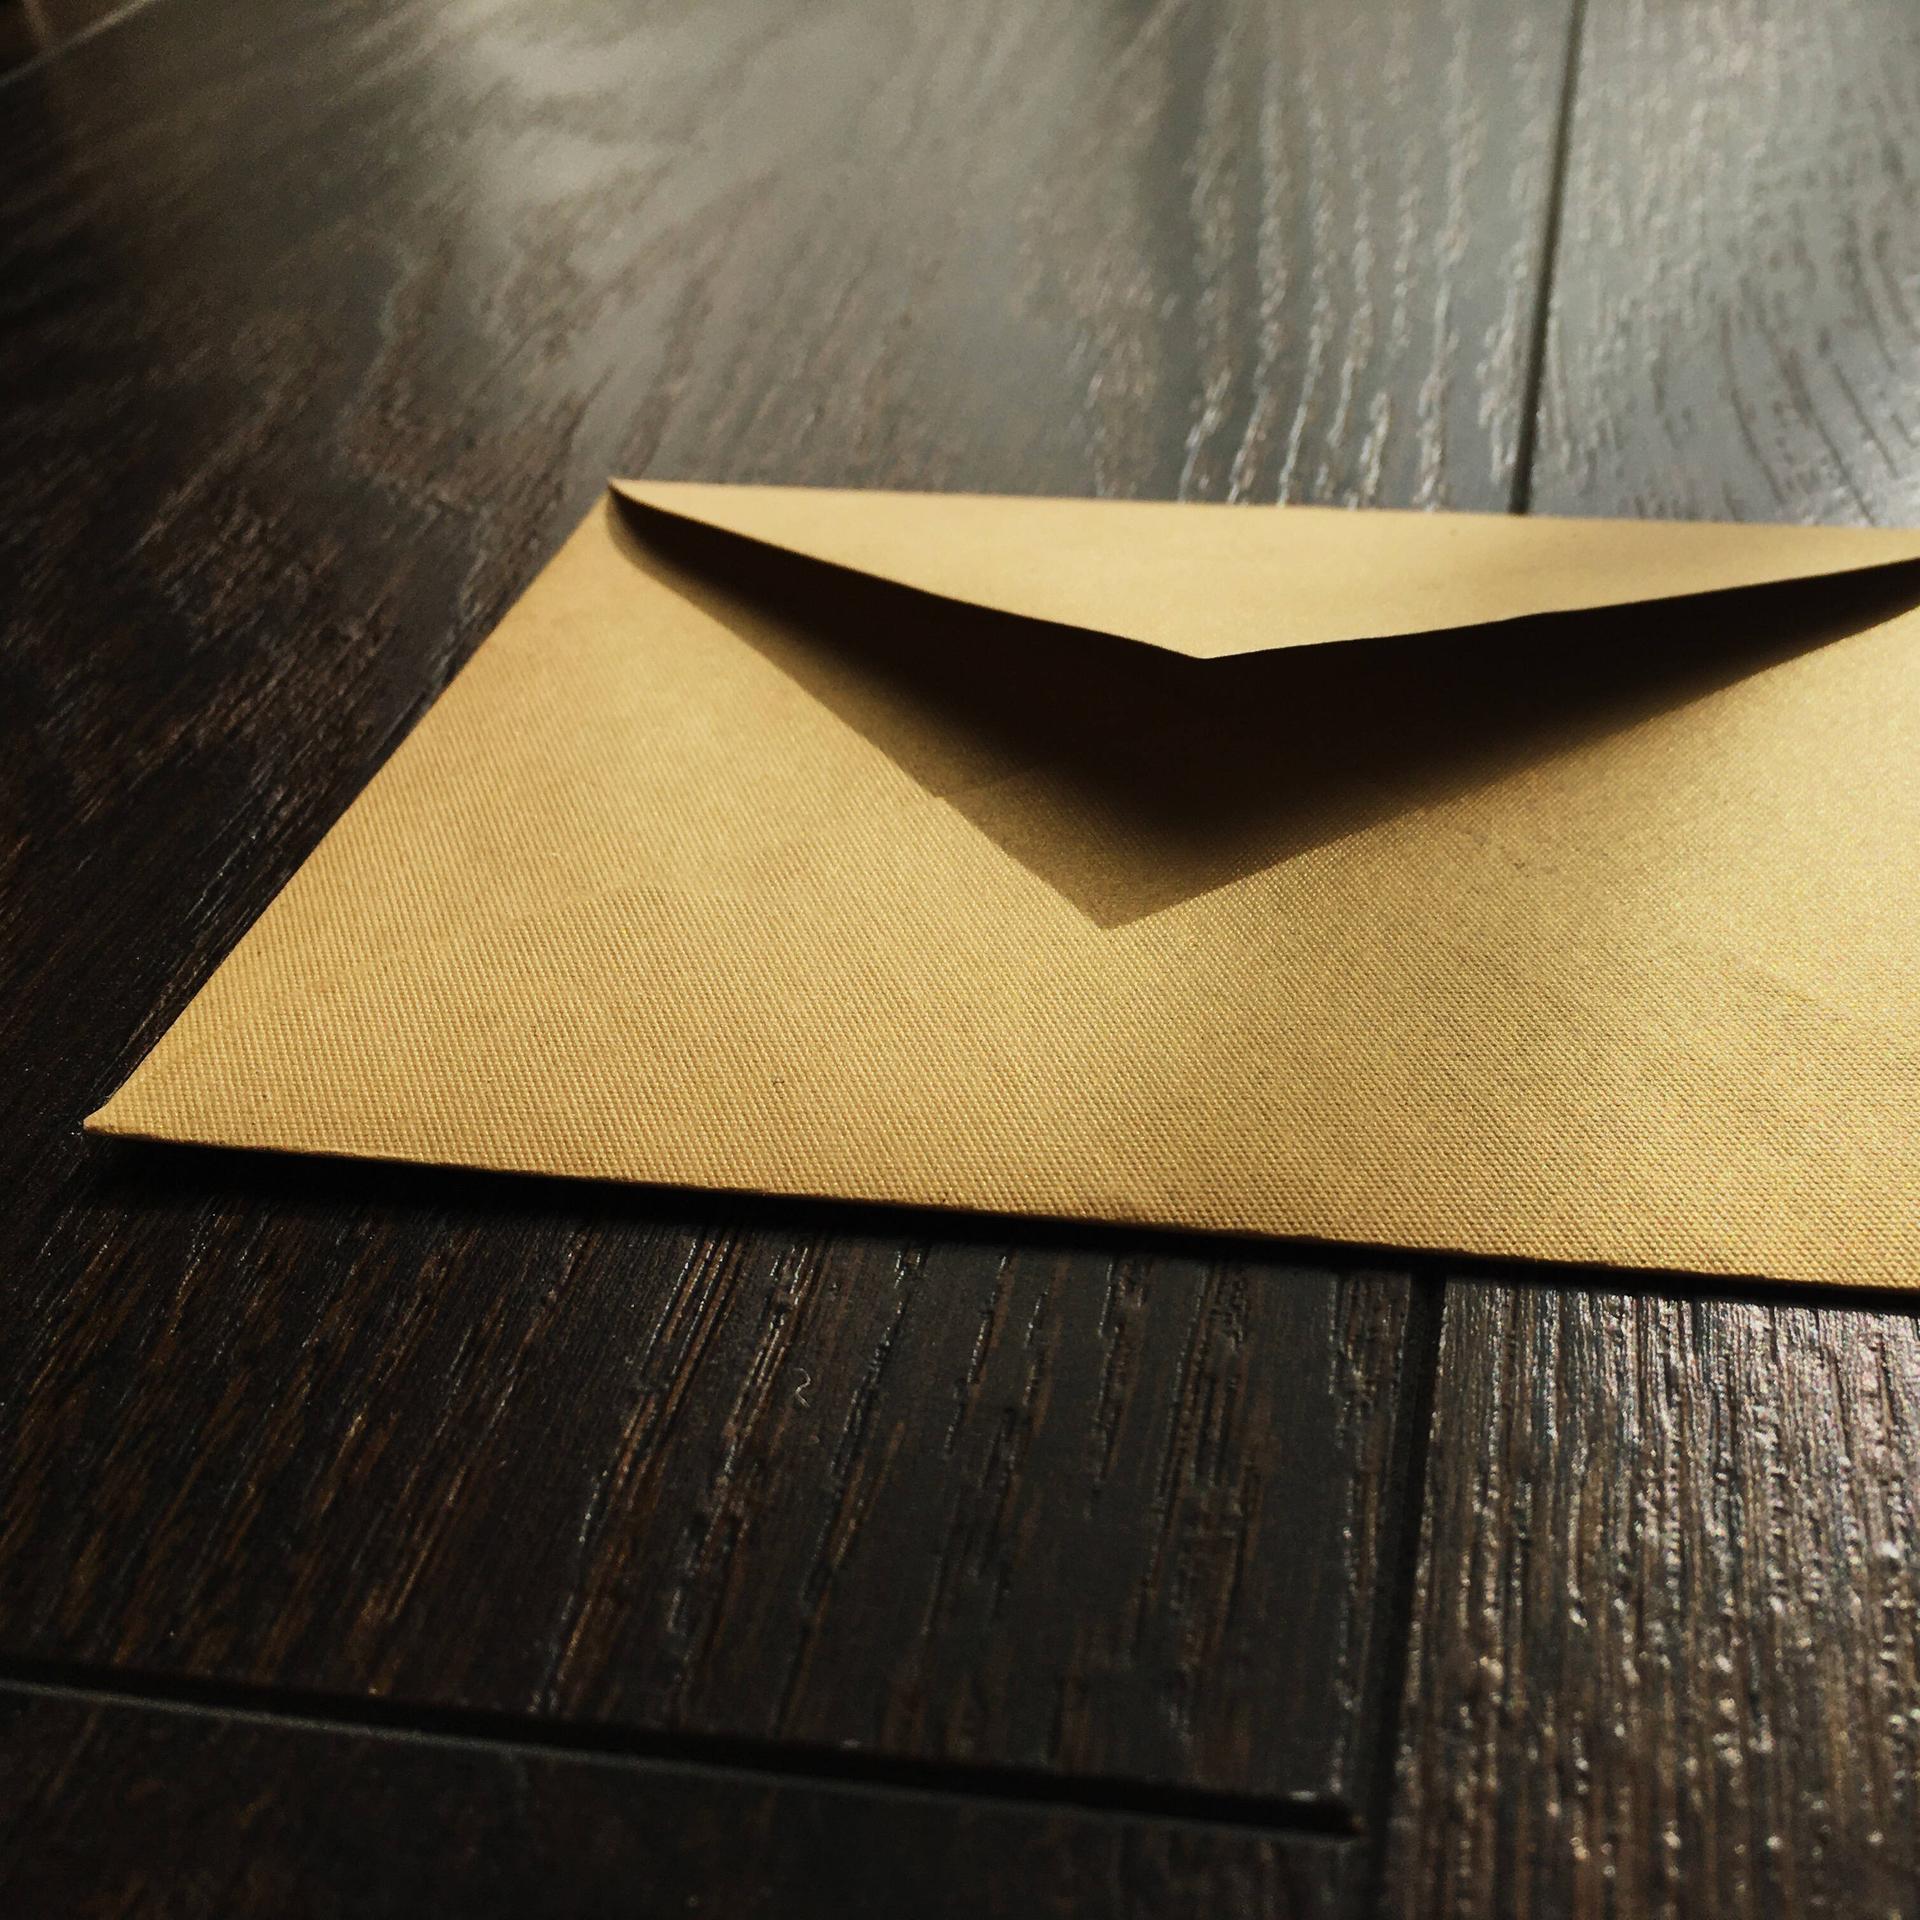 Ein goldener Briefumschlag liegt auf einer Fläche aus Holz.